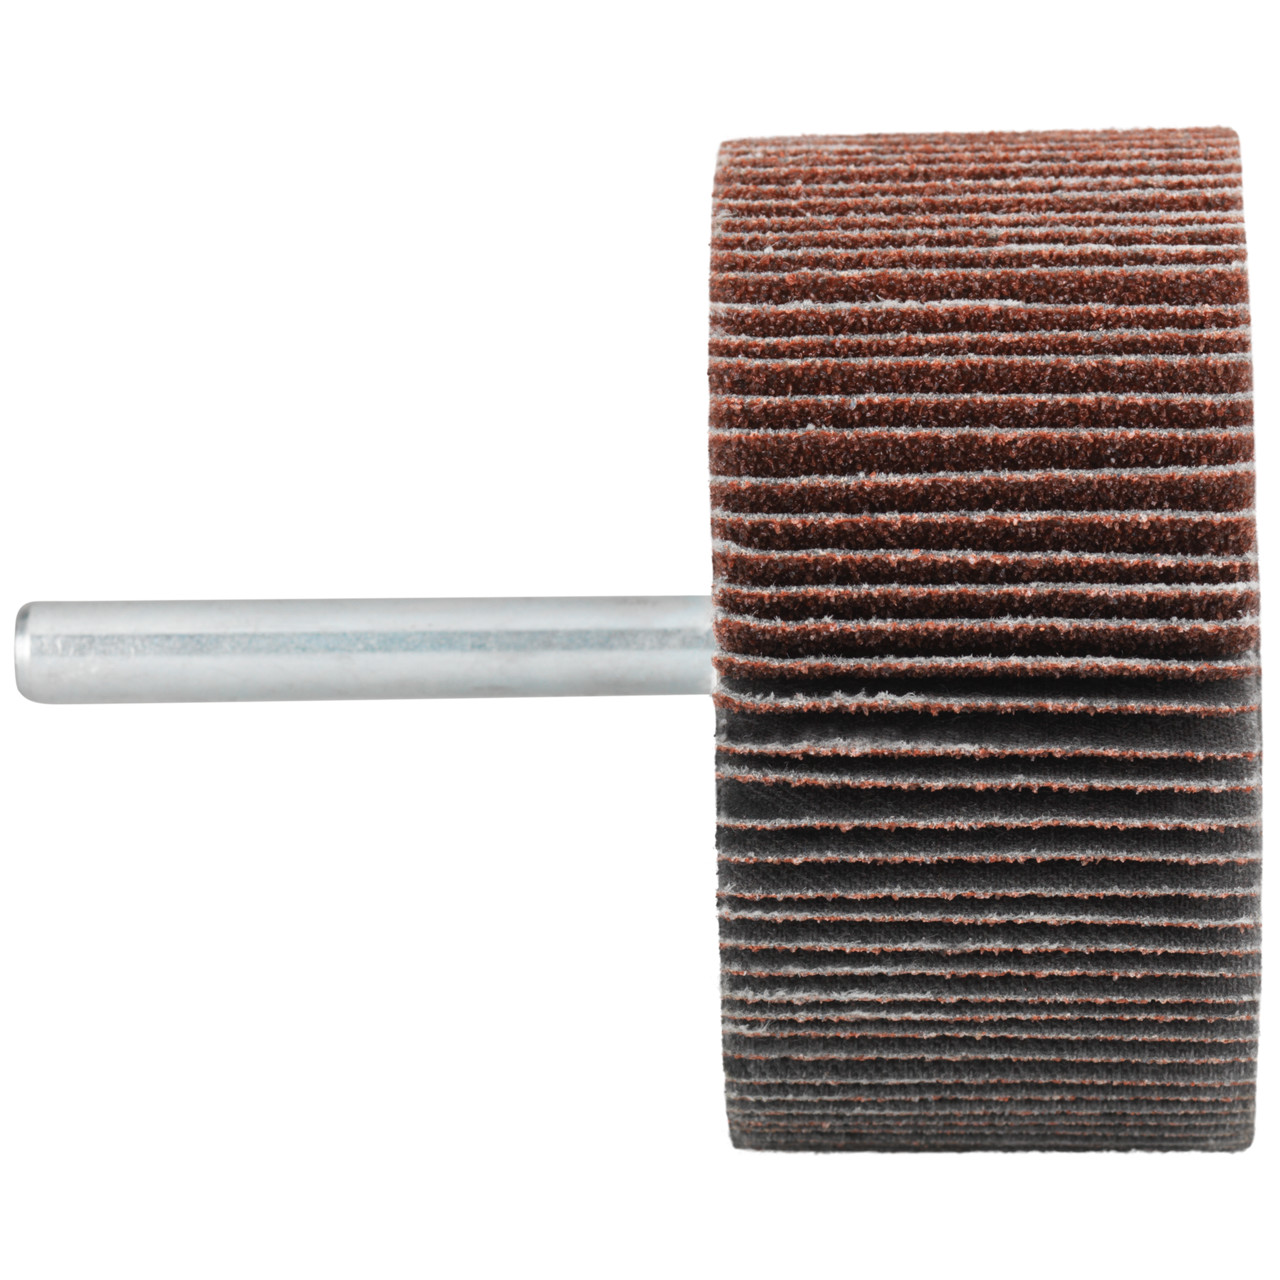 Tyrolit A-P01 C X Pennen DxD 25x15 Voor staal, roestvast staal en non-ferrometalen, P120, vorm: 52LA, Art. 816847